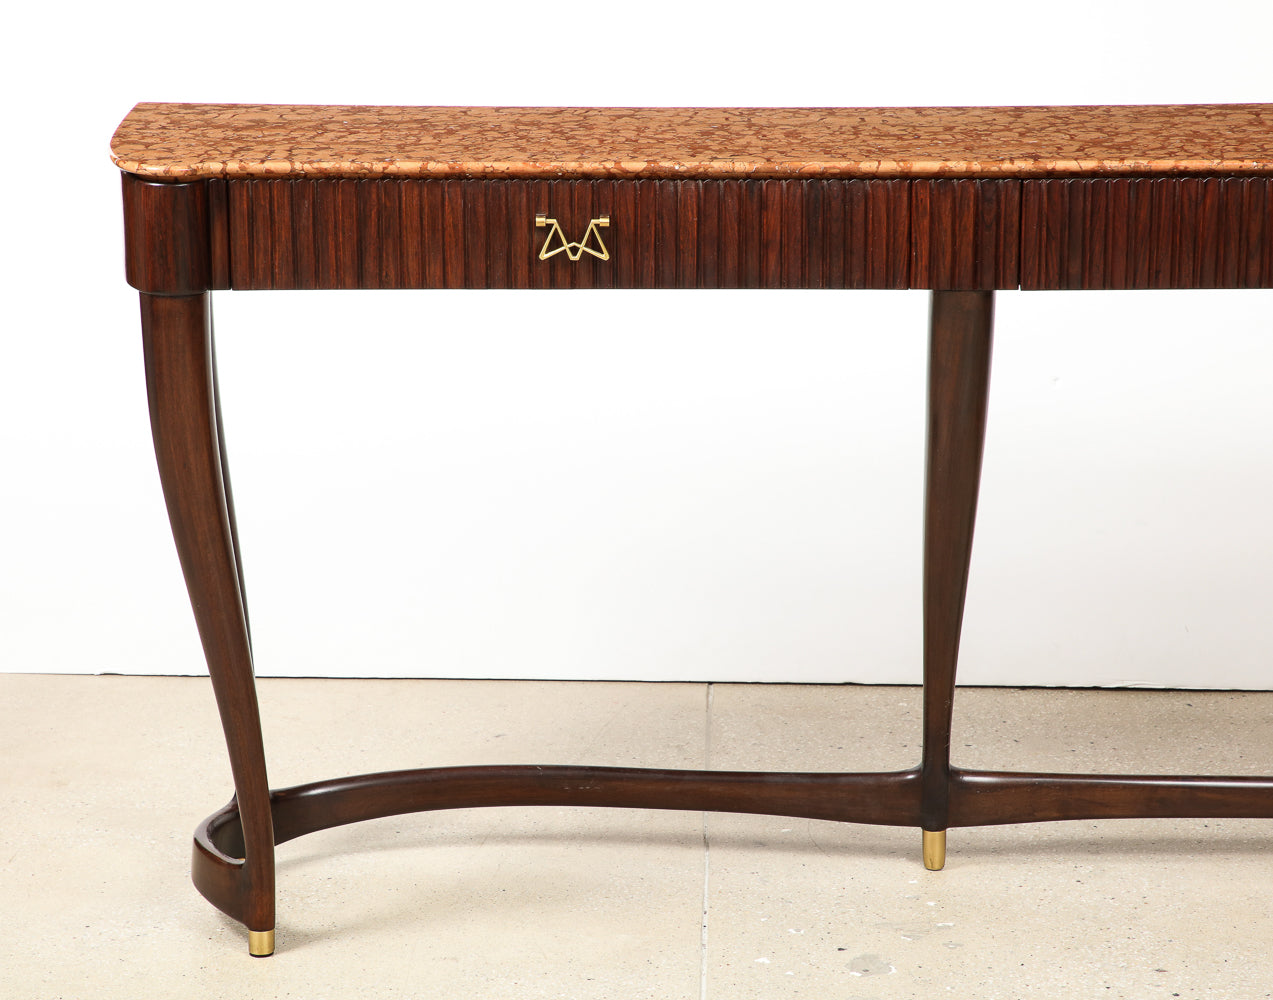 Console Table No. 7103 by Osvaldo Borsani for ABV